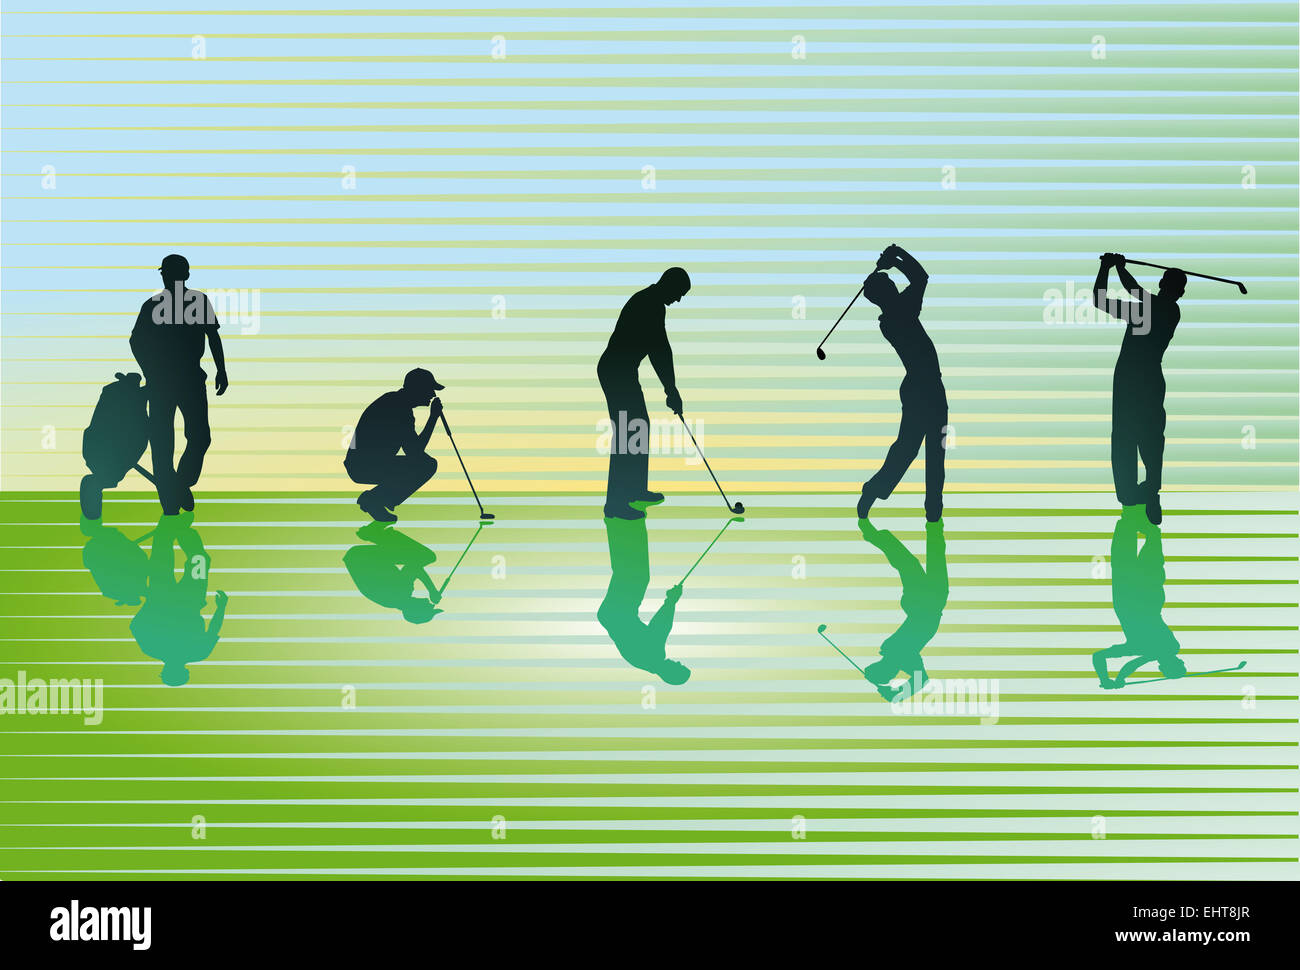 green golf course Stock Photo